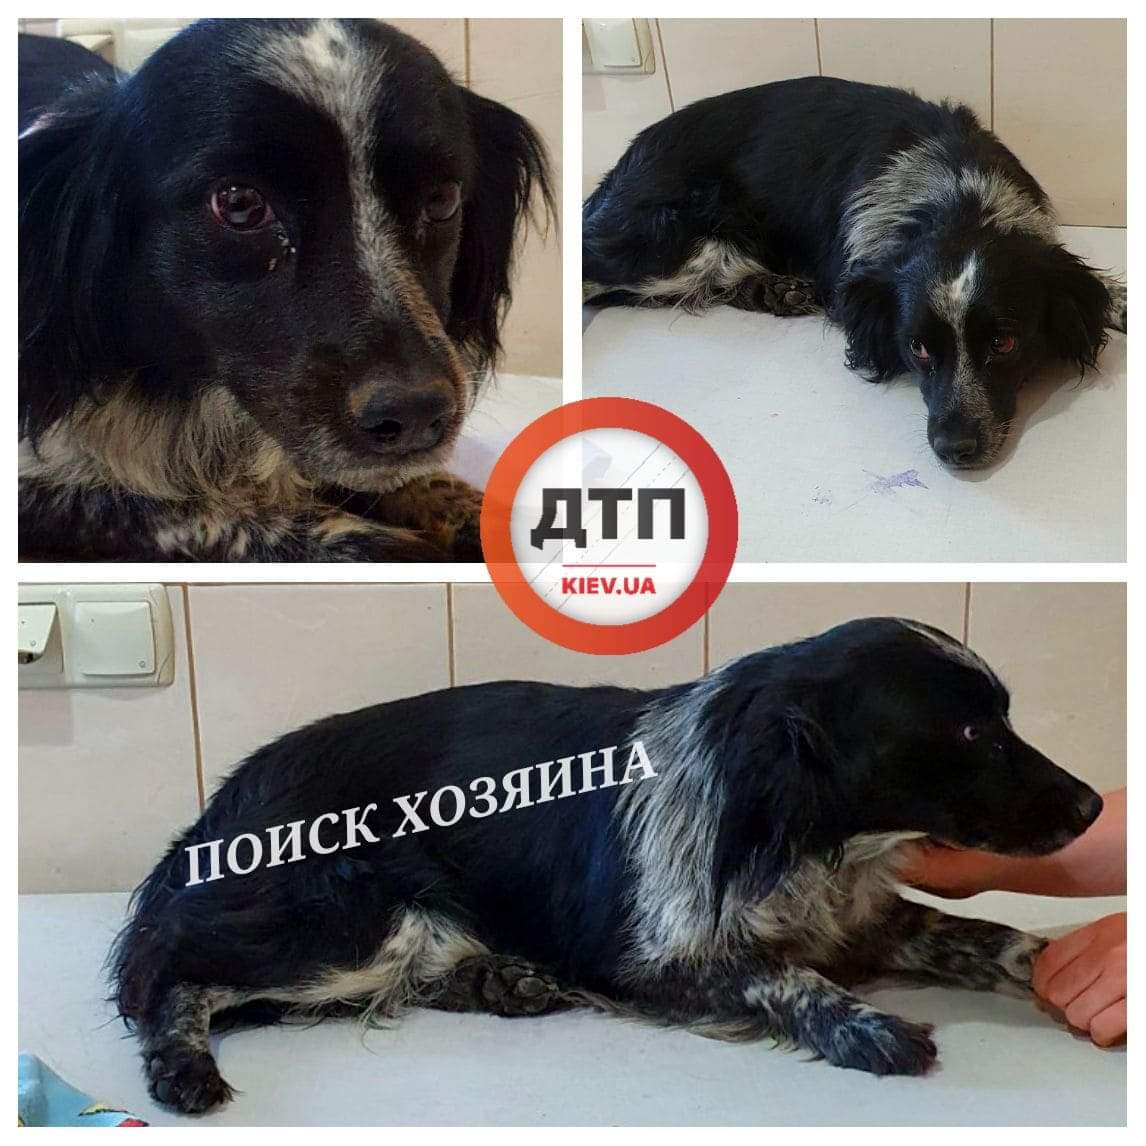 Сегодня в Вишневом на улице Черновола сбили собаку и бросили: поиск хозяев